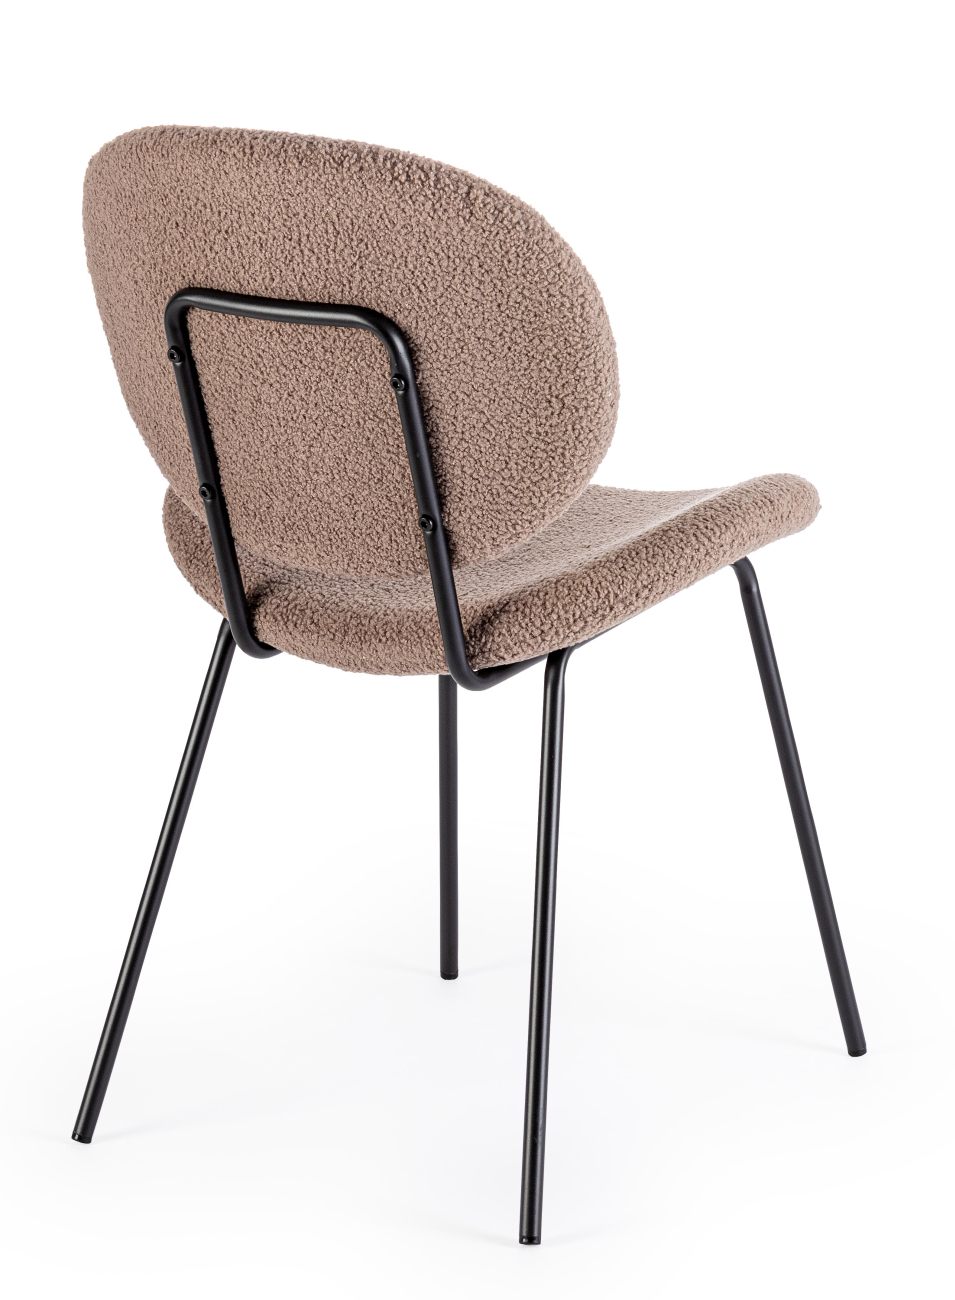 Der Esszimmerstuhl Maddie überzeugt mit seinem modernen Stil. Gefertigt wurde er aus Boucle-Stoff, welcher einen braunen Farbton besitzt. Das Gestell ist aus Metall und hat eine schwarze Farbe. Der Stuhl besitzt eine Sitzhöhe von 46 cm.